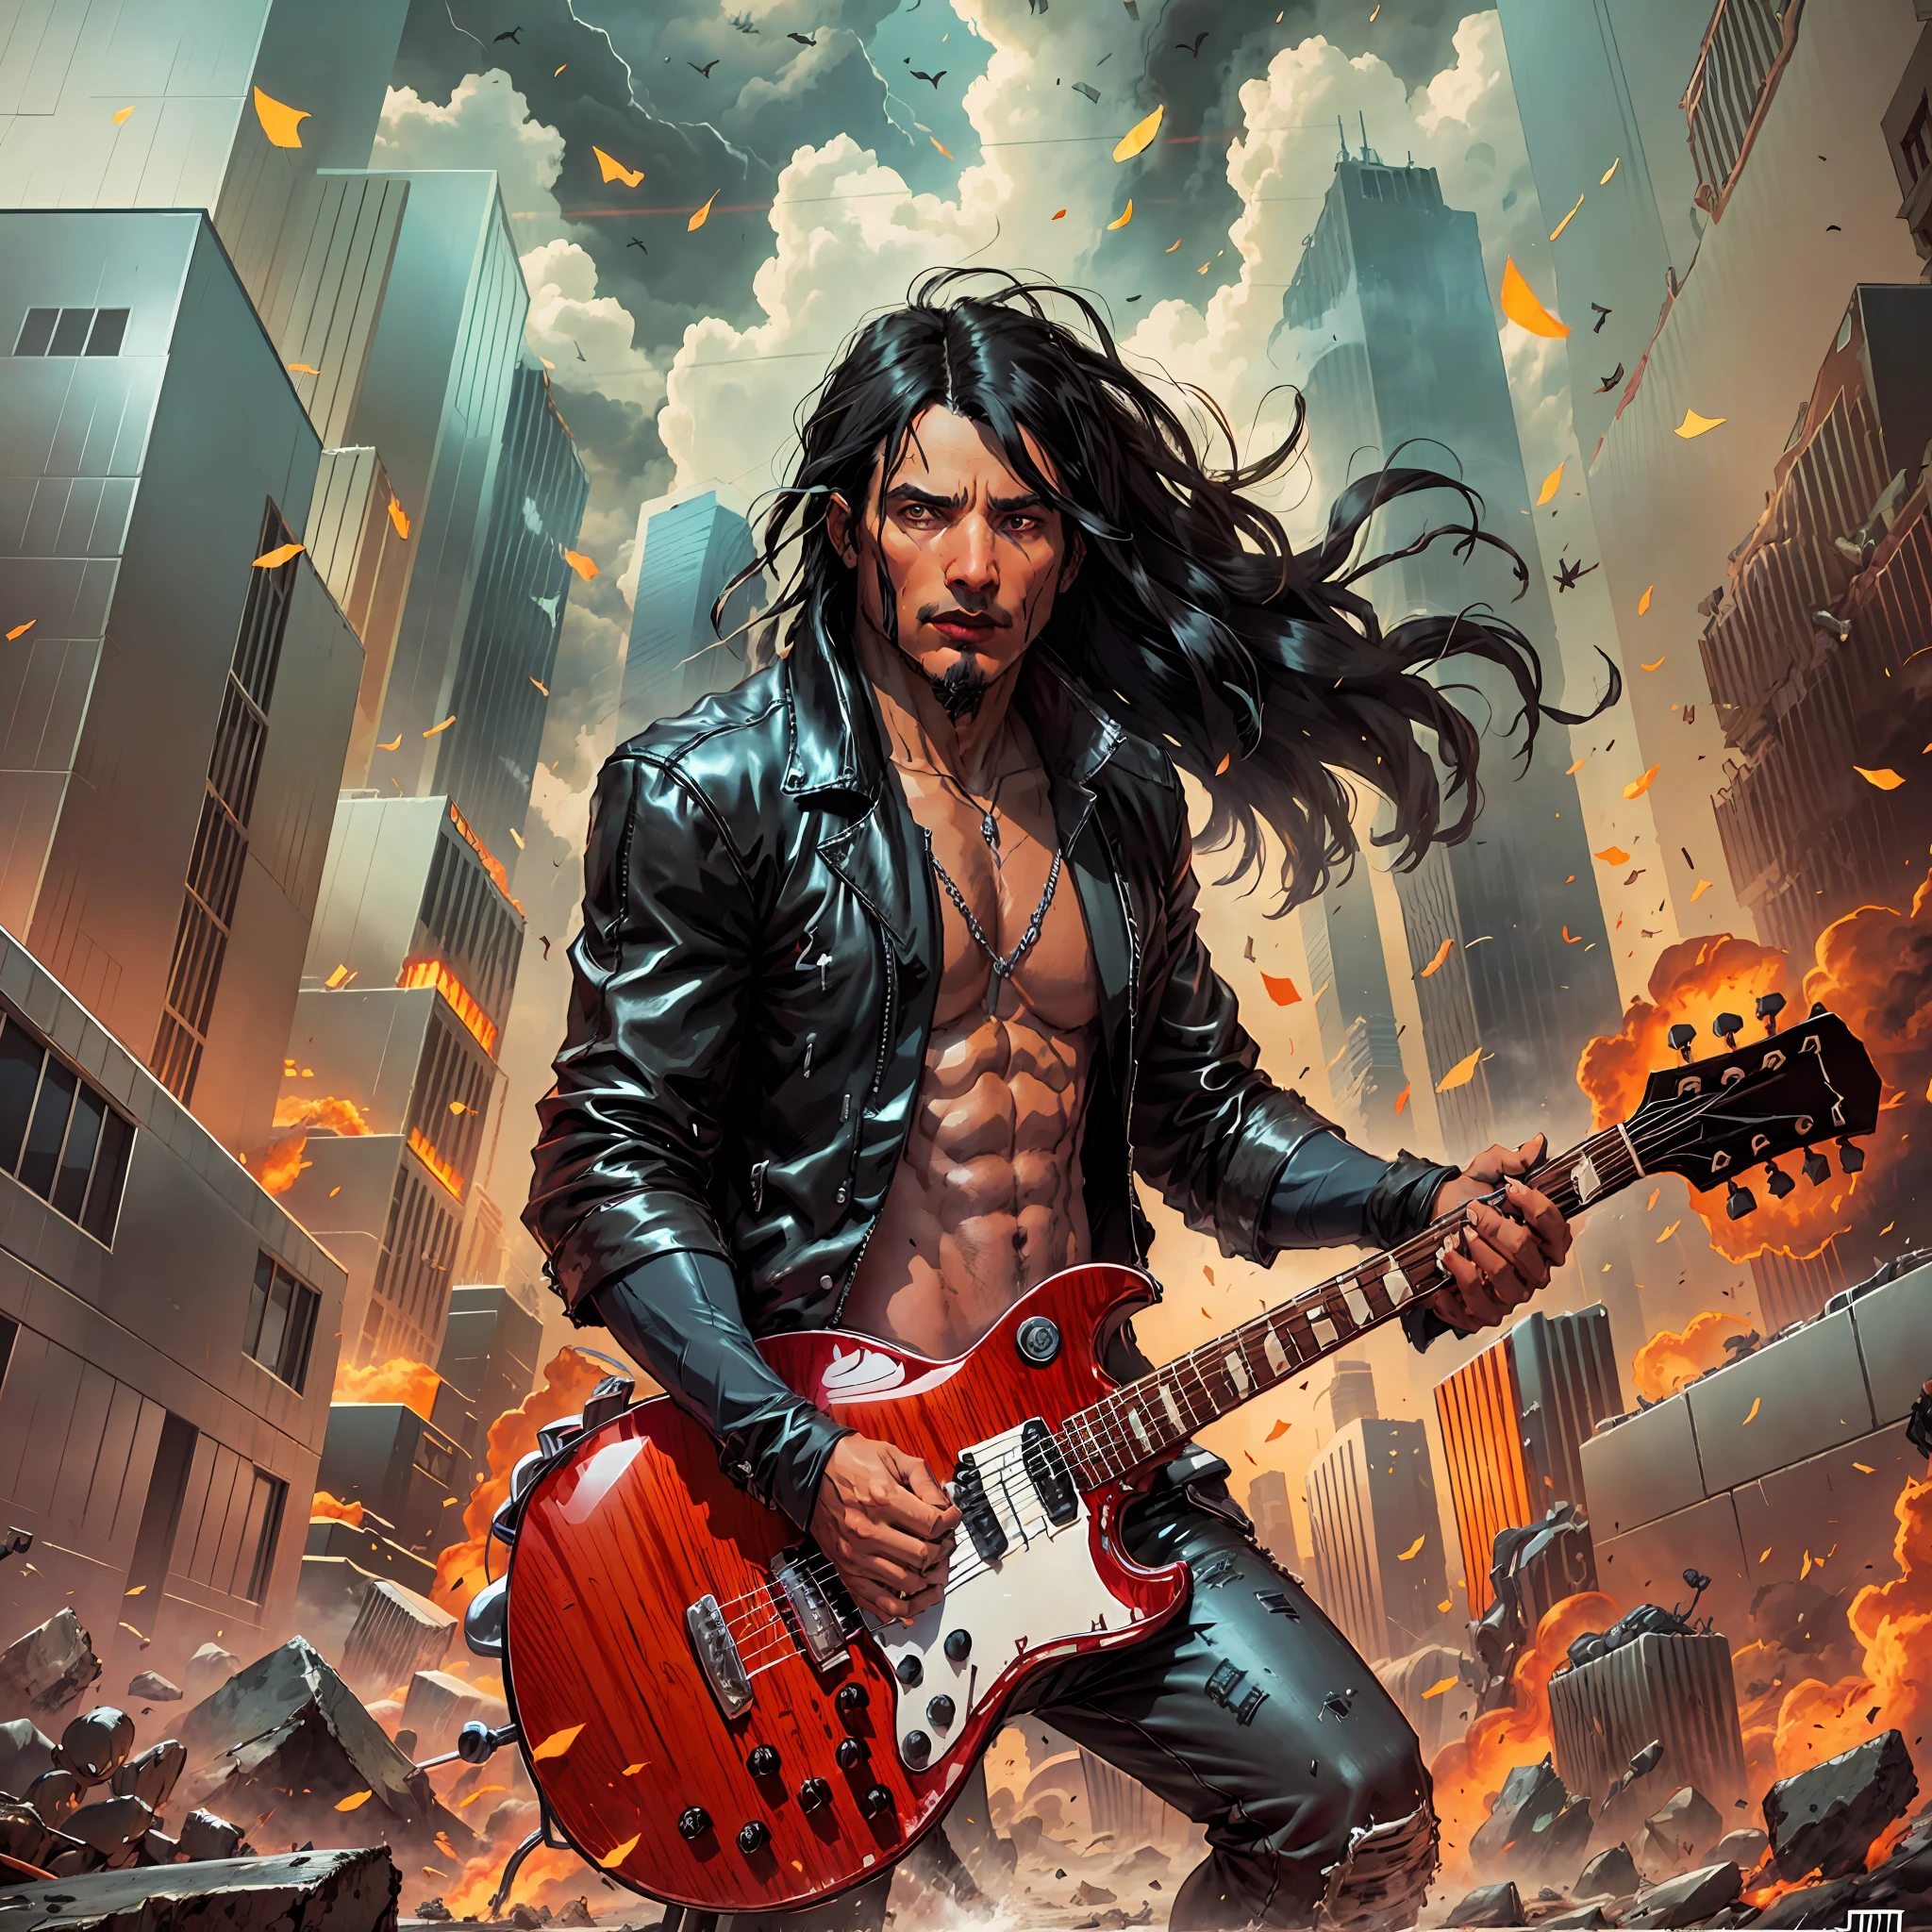 un homme (1 homme) avec de longs cheveux noirs, Veste style rock in roll noire jouant de la guitare, une ville complètement détruite et en feu, style d&#39;art numérique fantastique épique, illustration fantastique épique